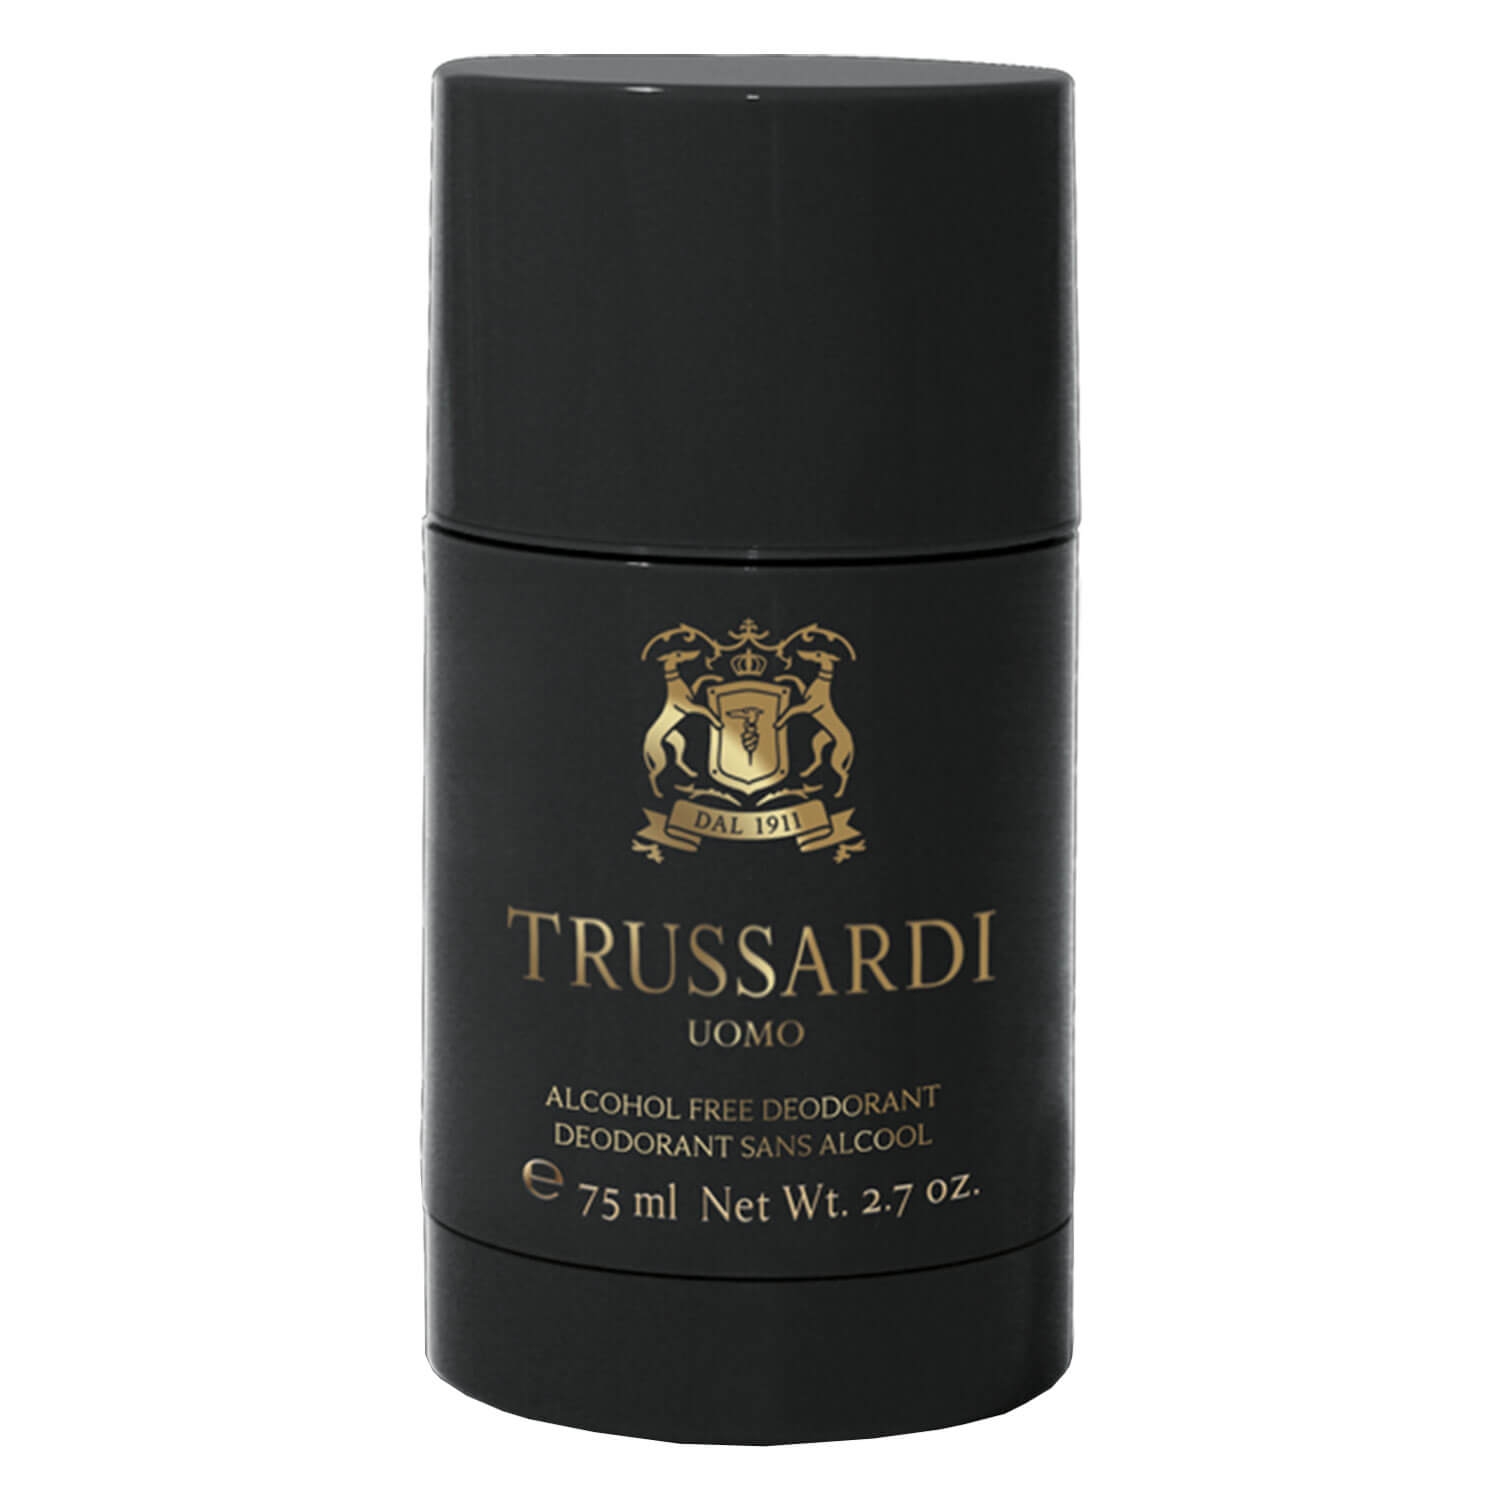 Produktbild von Trussardi Uomo - Alcohol Free Deodorant